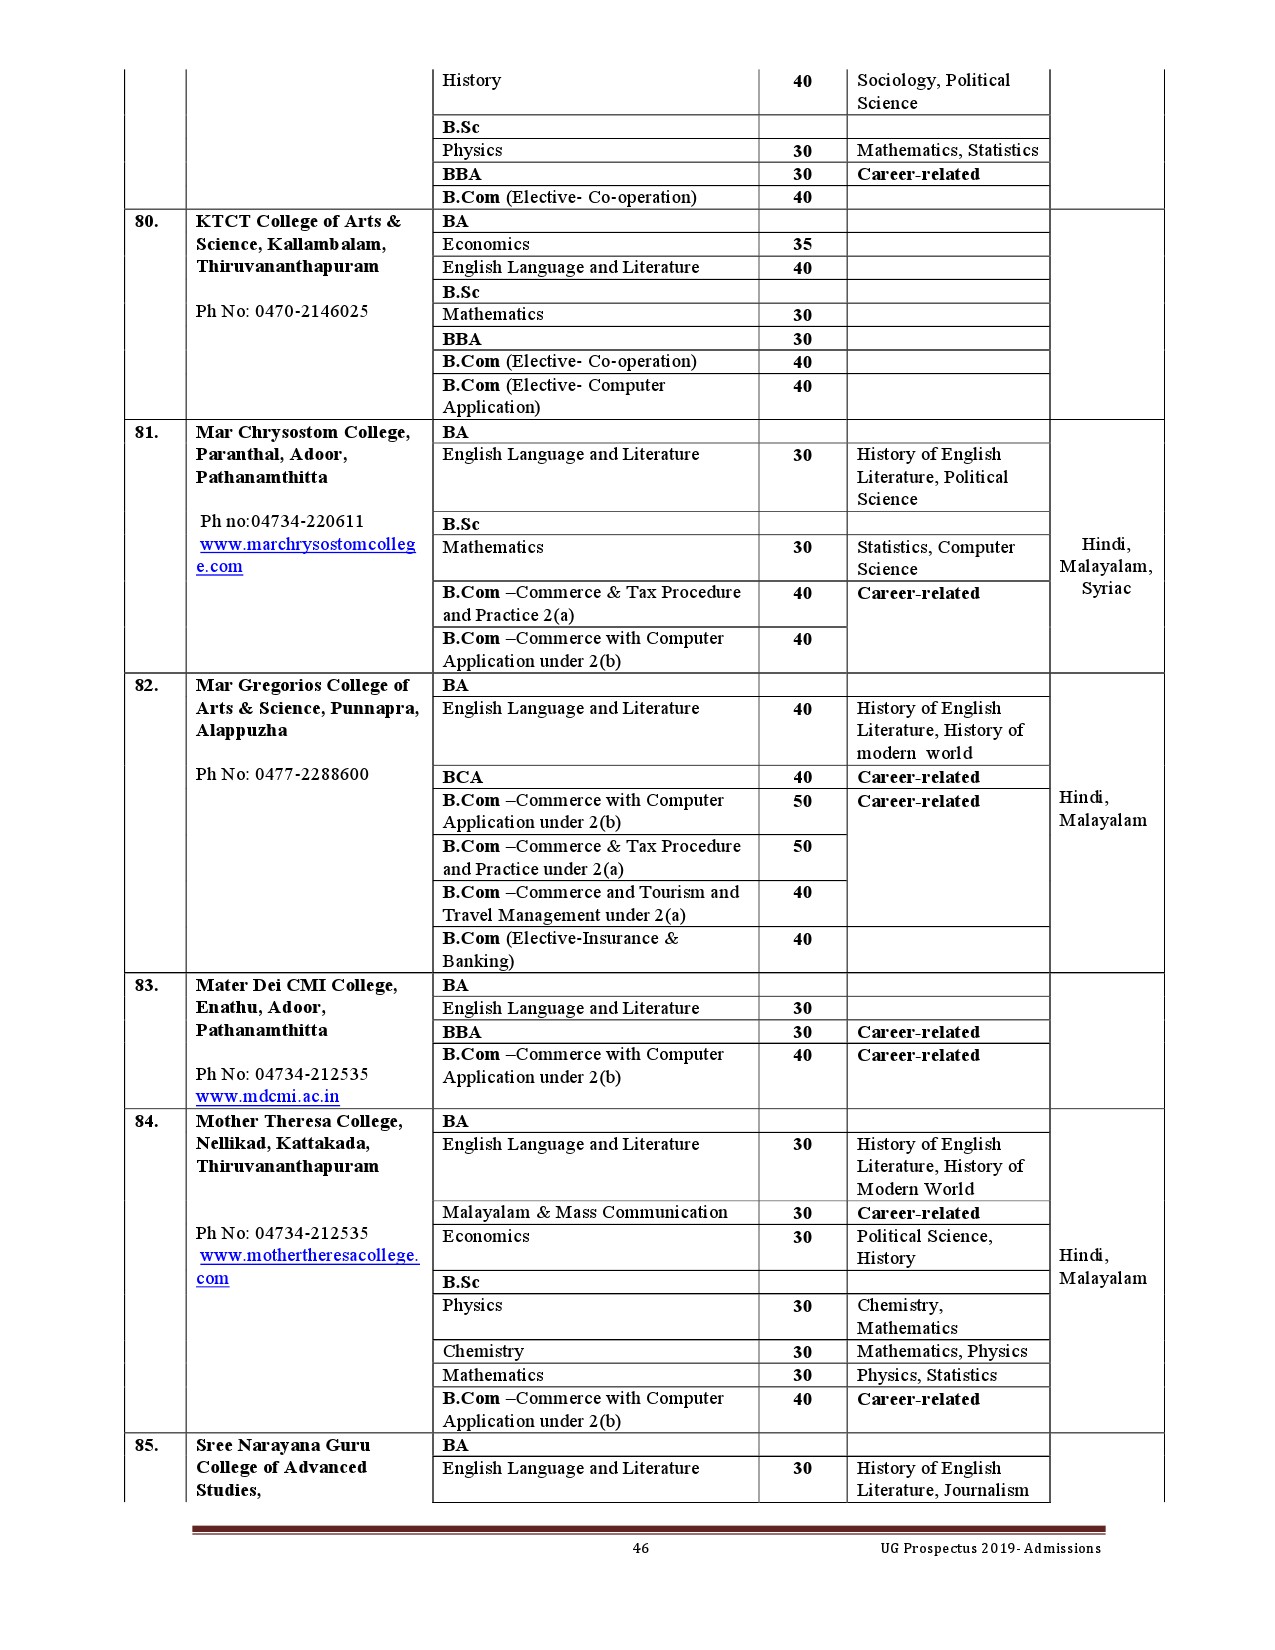 Kerala University UG Admission Prospectus 2019 - Notification Image 46